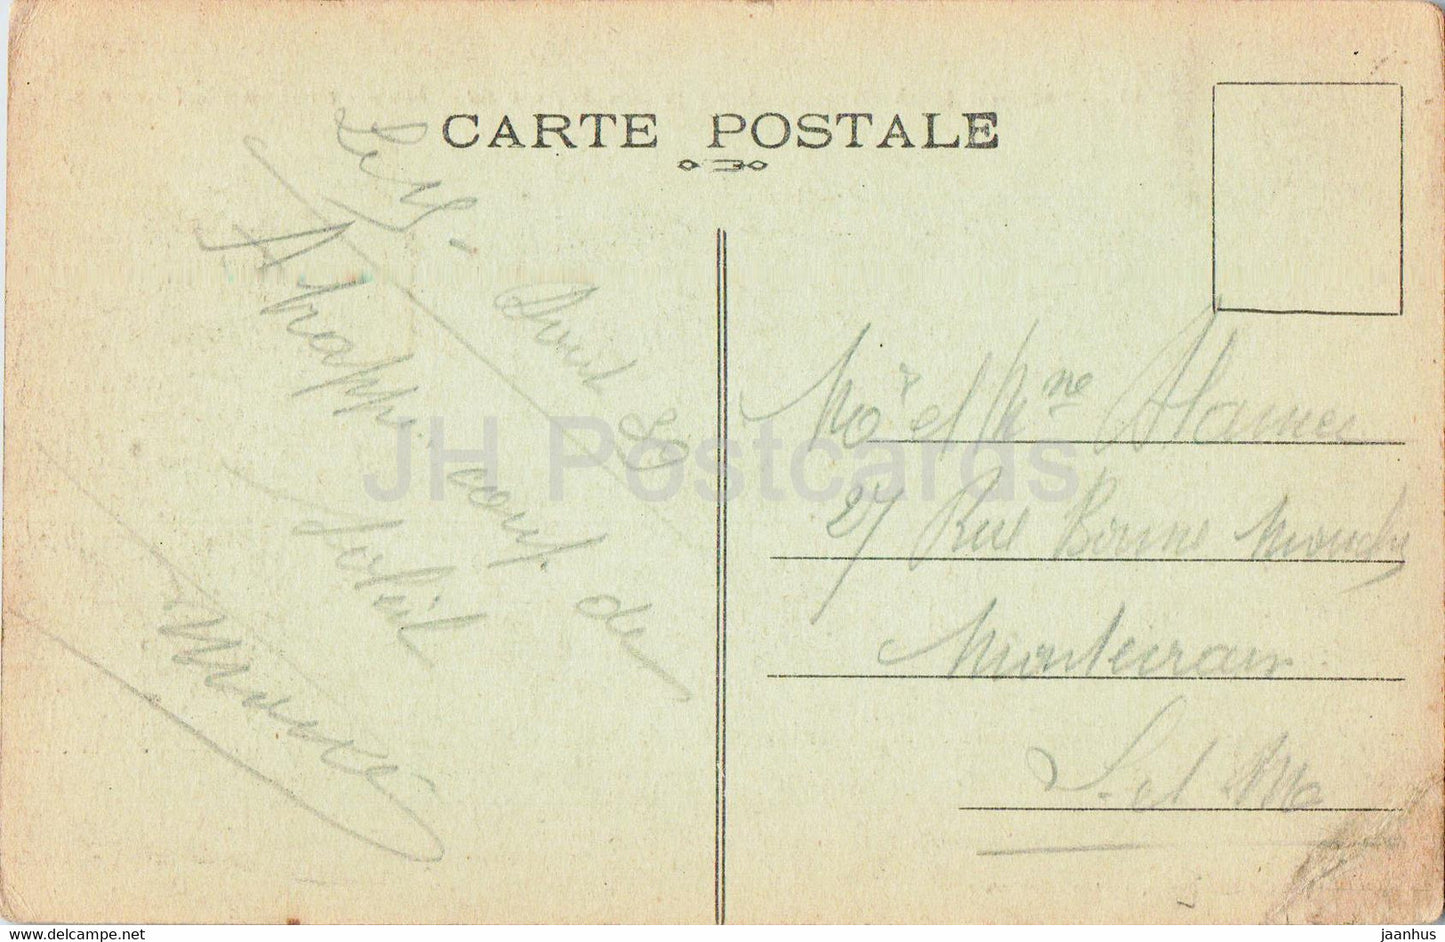 Environs de Cherbourg - Les Falaises de Greville et la Cote vues du Chalet - 454 - old postcard - 1939 - France - used